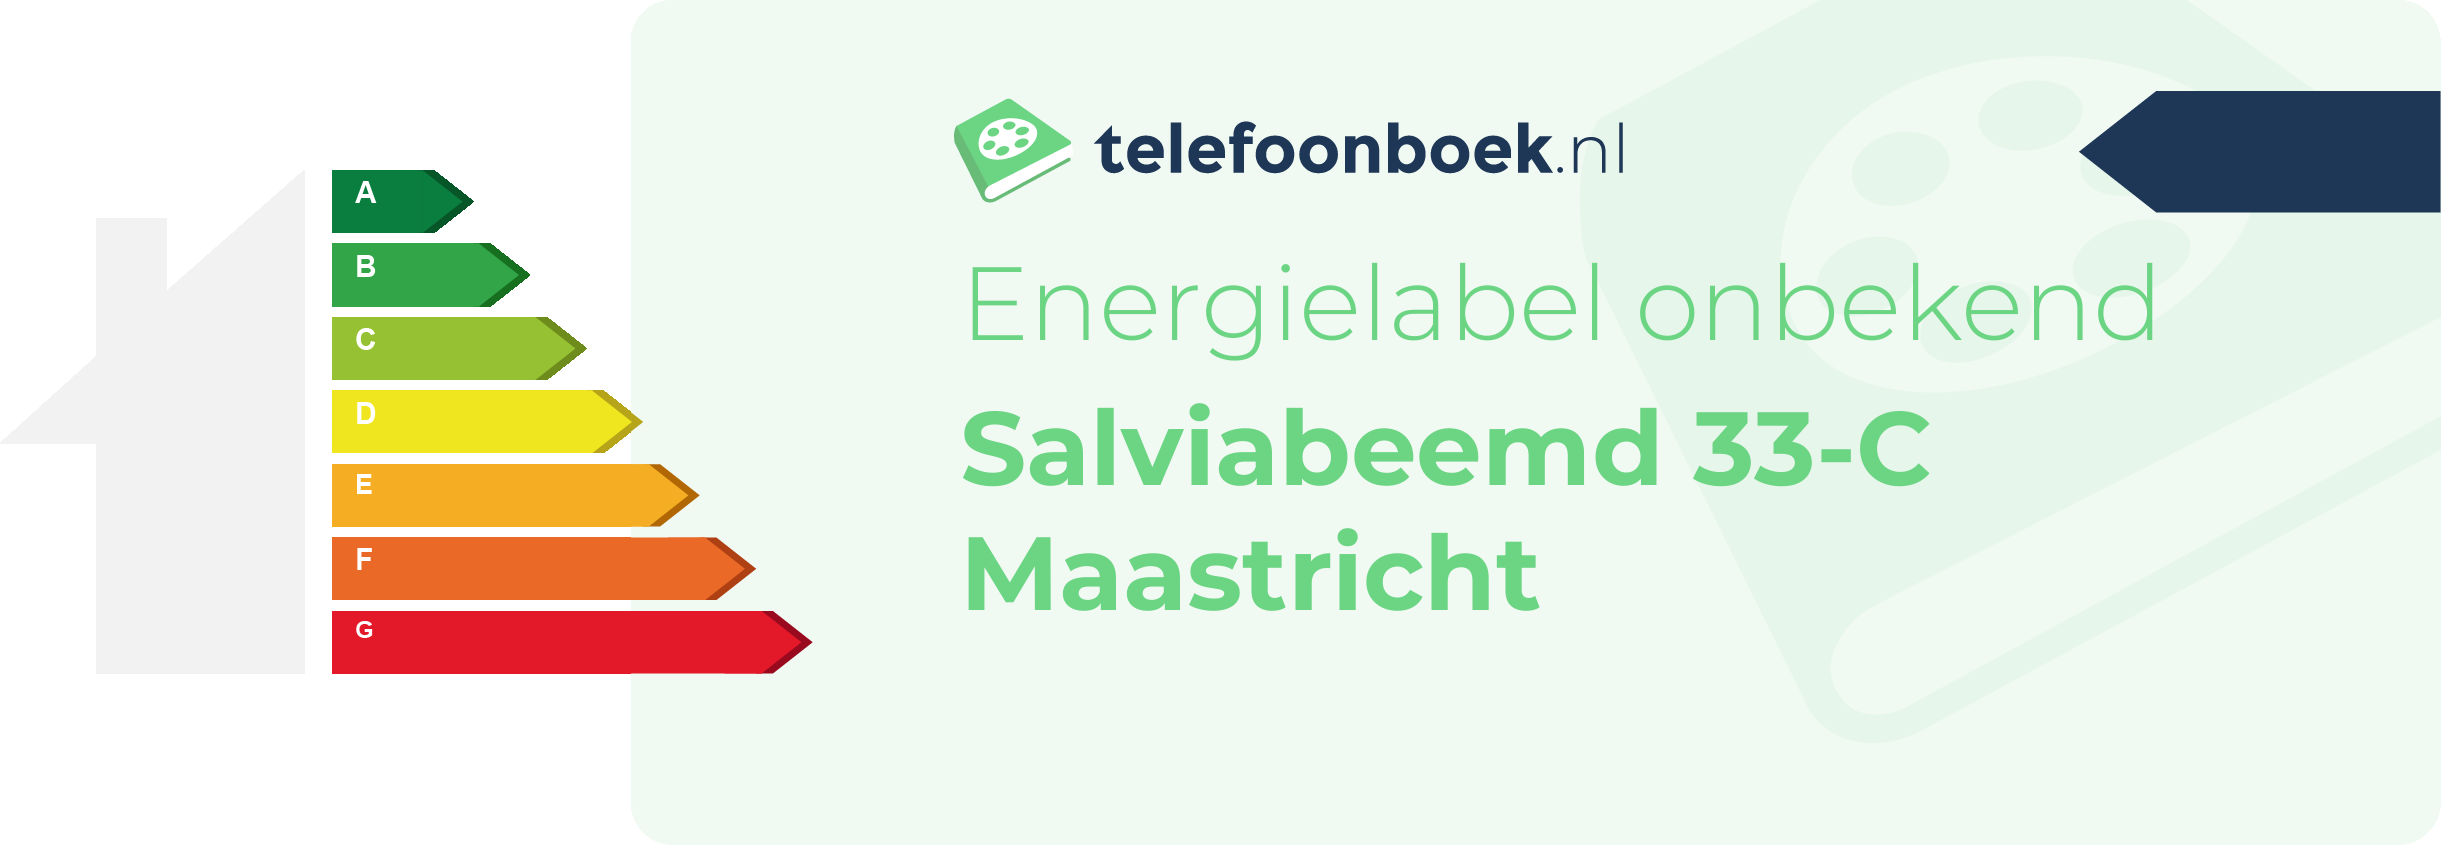 Energielabel Salviabeemd 33-C Maastricht